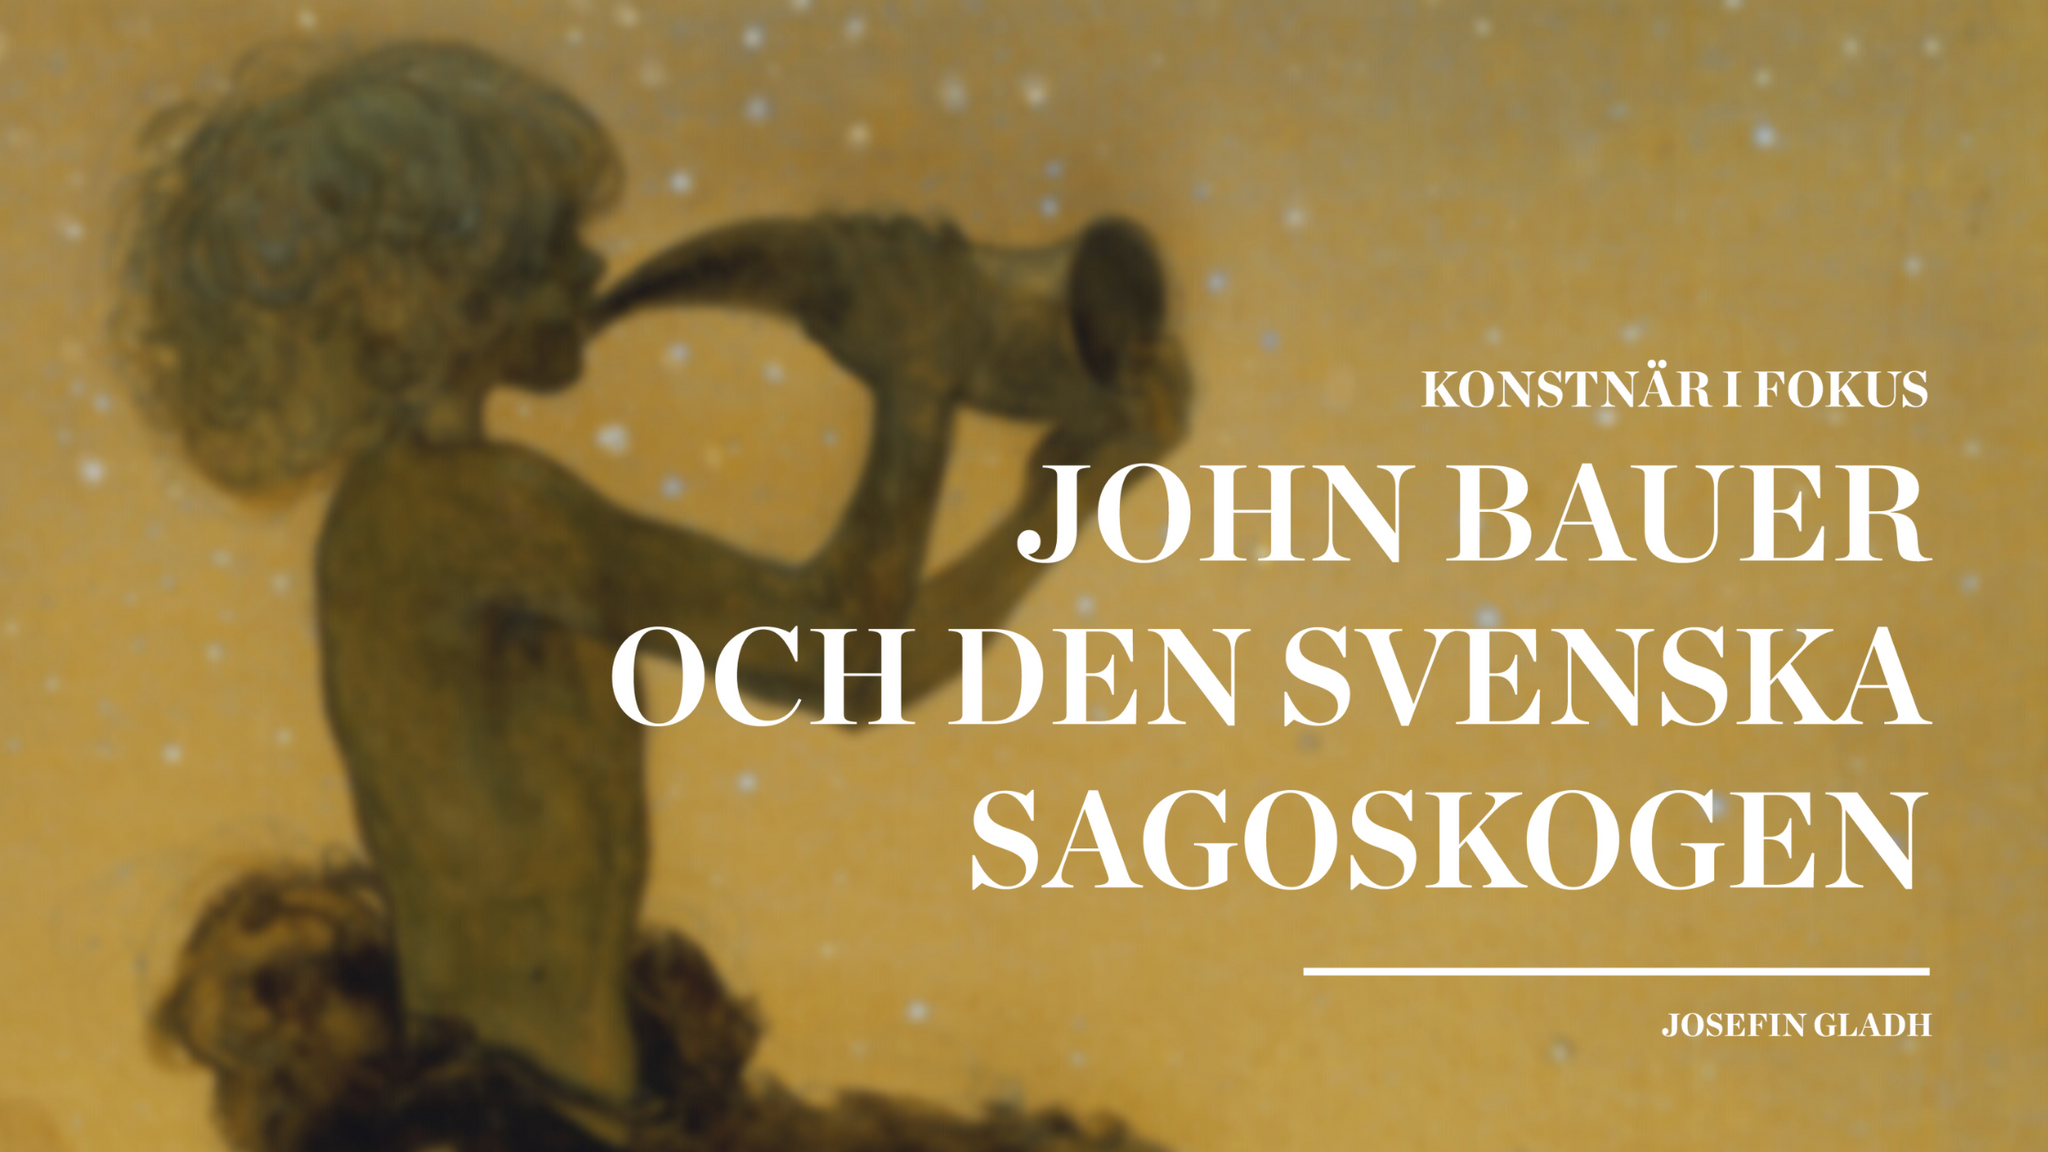 Konstnär i fokus – John Bauer och den svenska sagoskogen